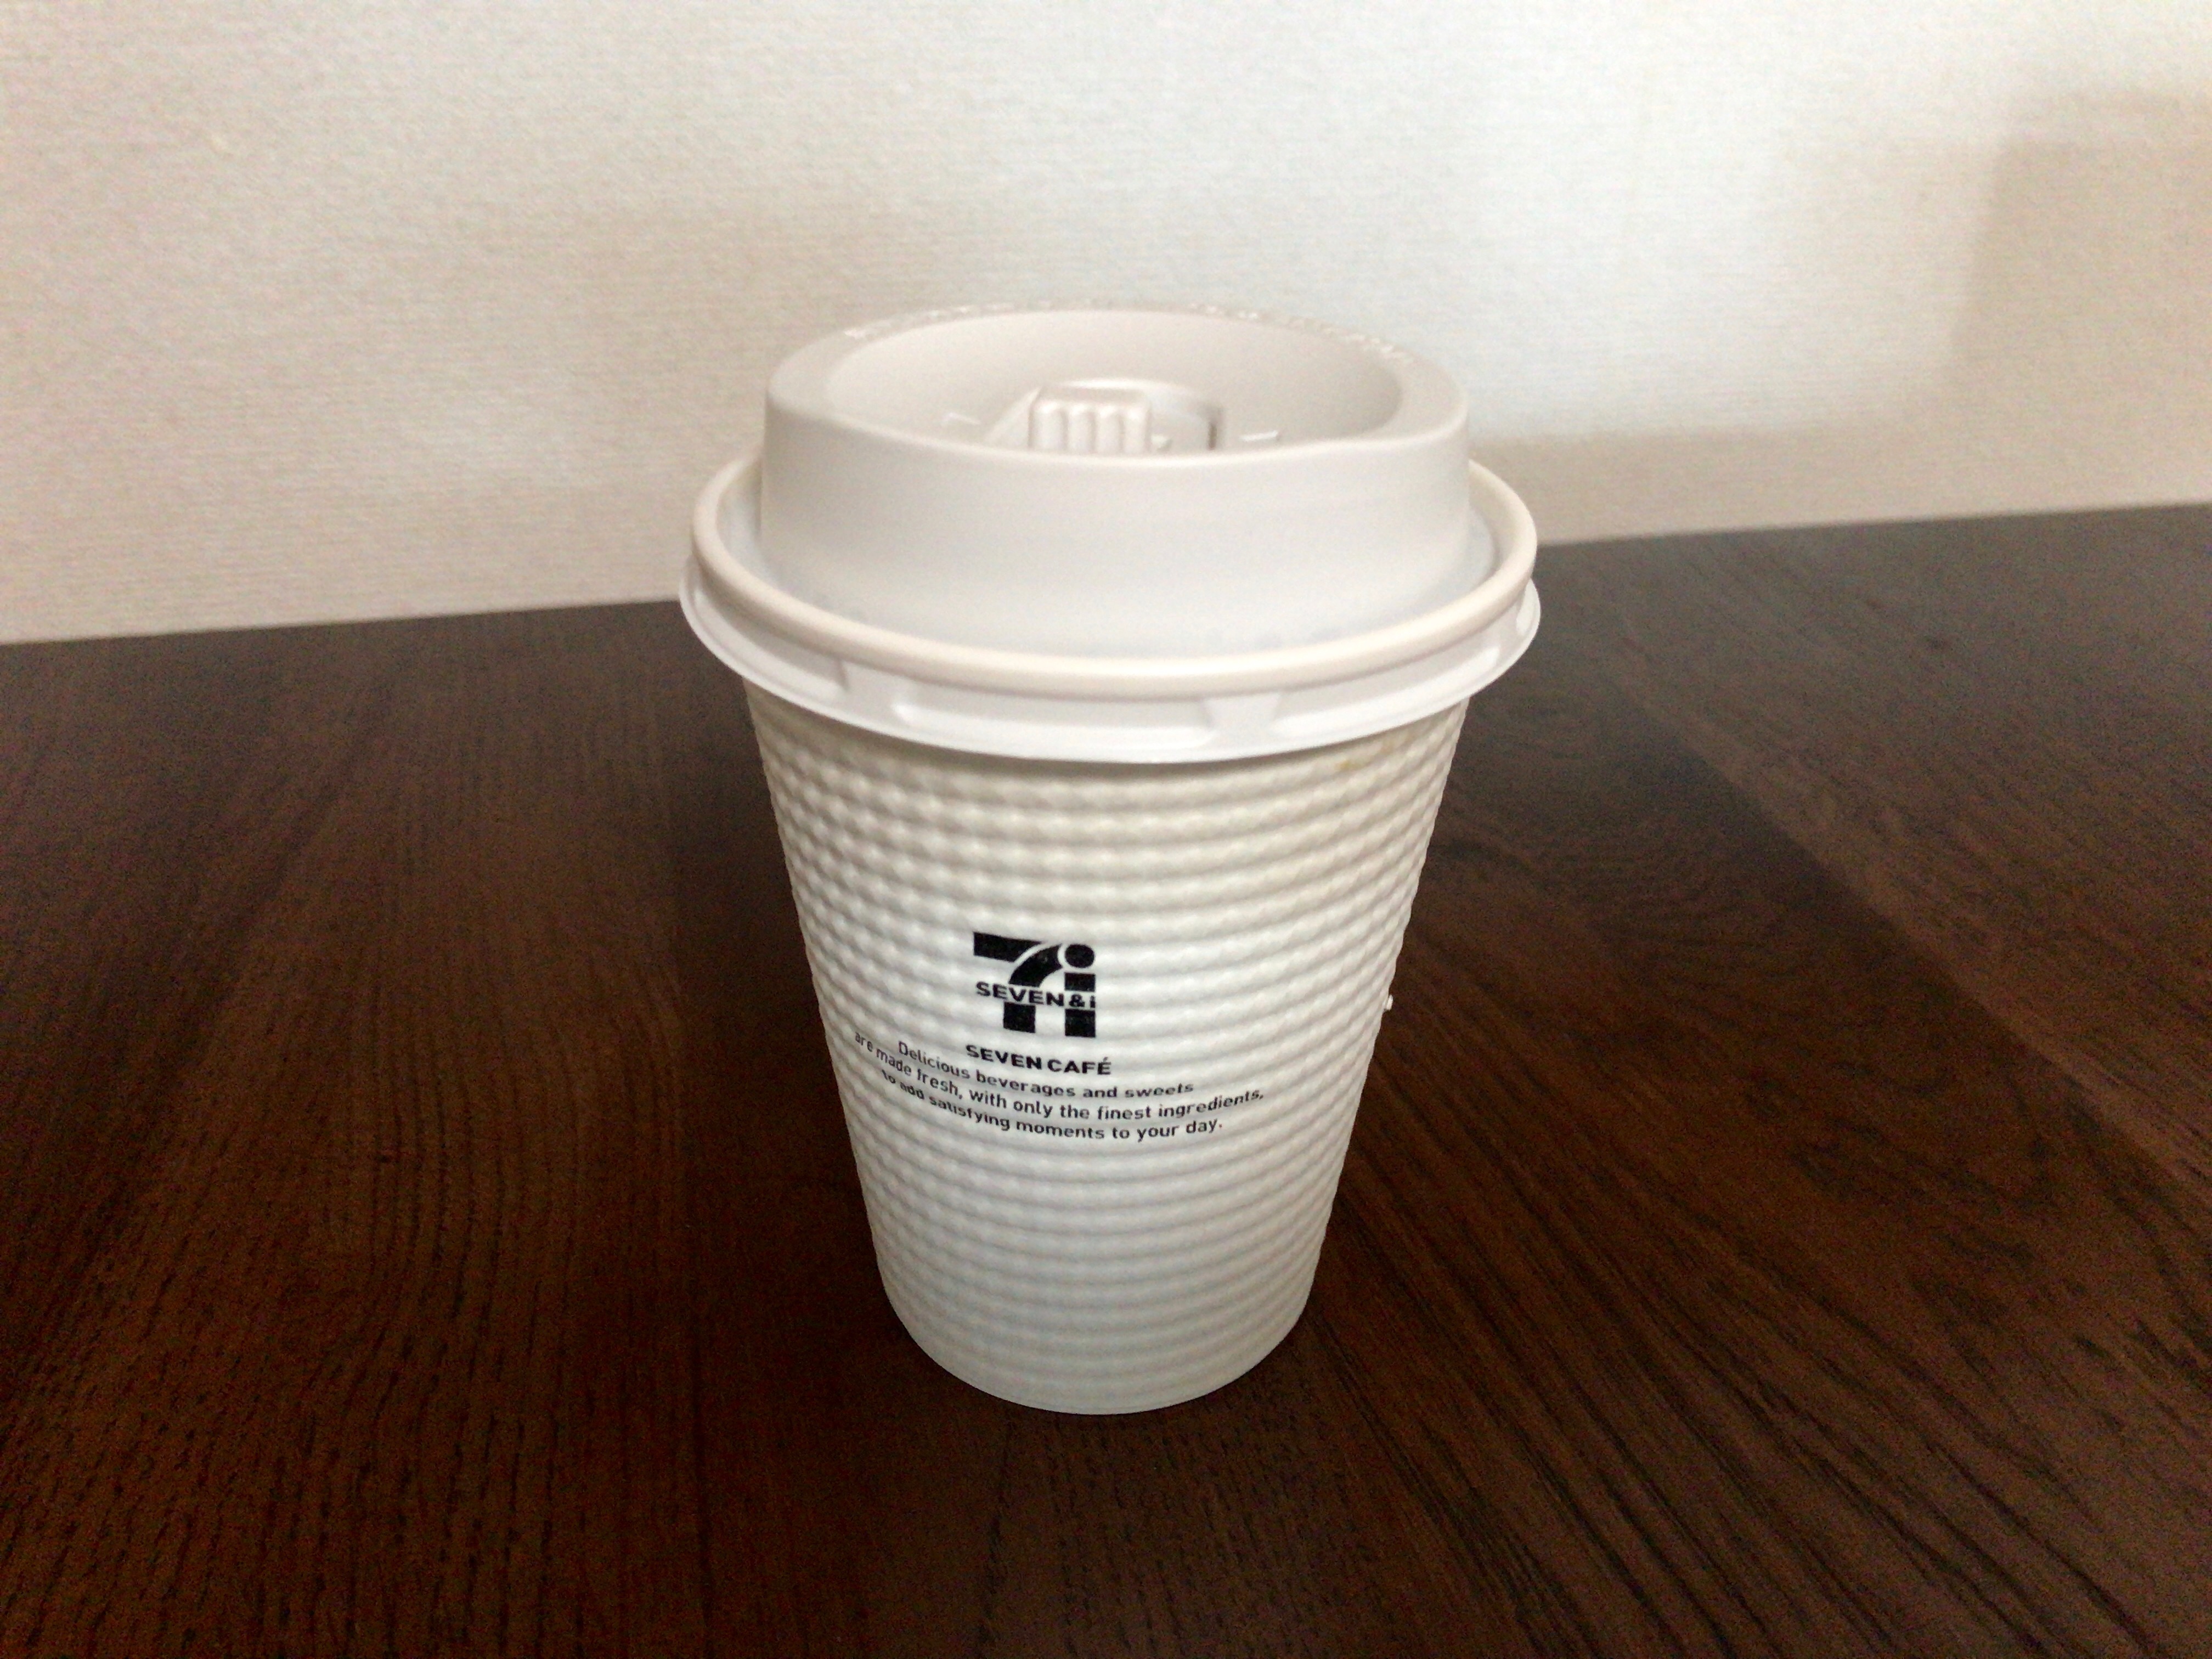 セブンカフェの新しいコーヒーマシンに期待していること。